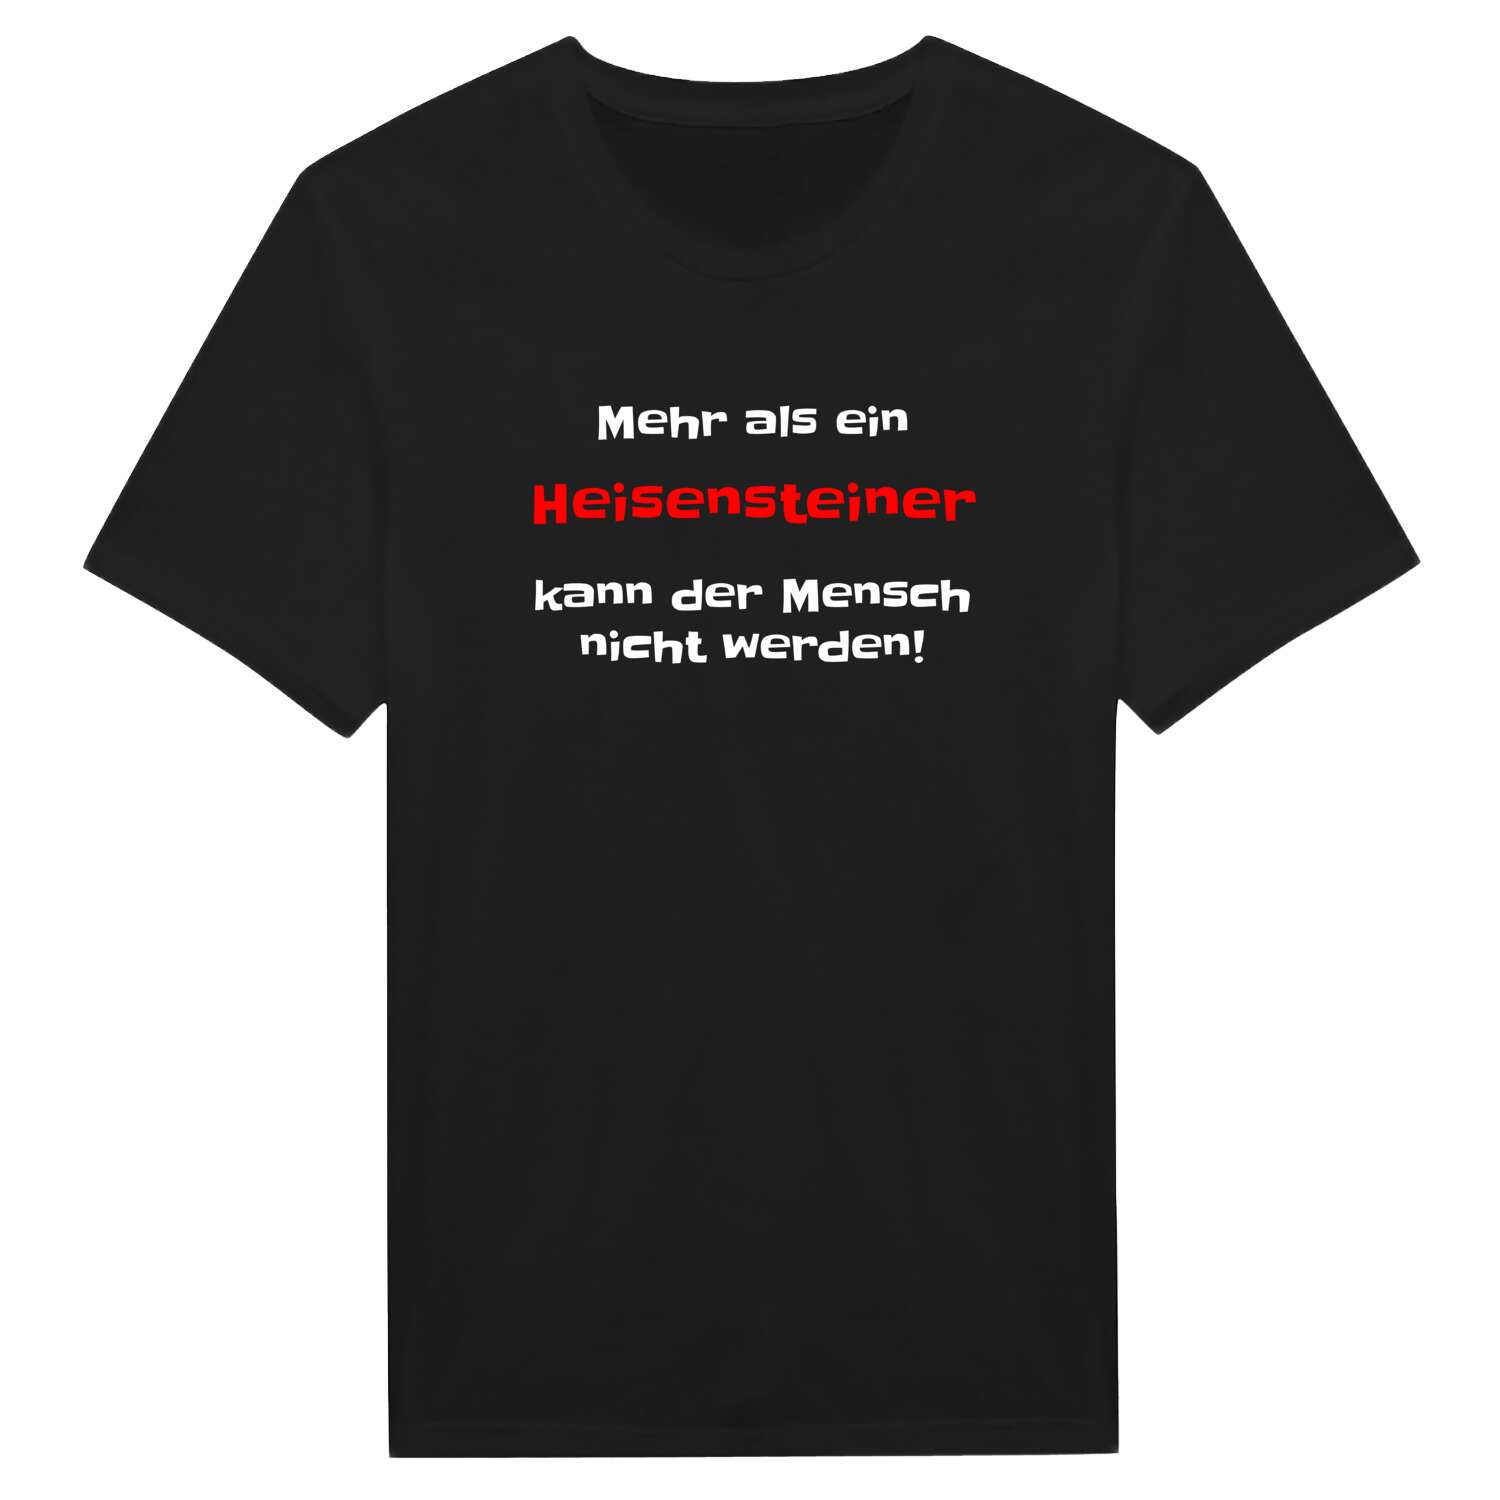 Heisenstein T-Shirt »Mehr als ein«